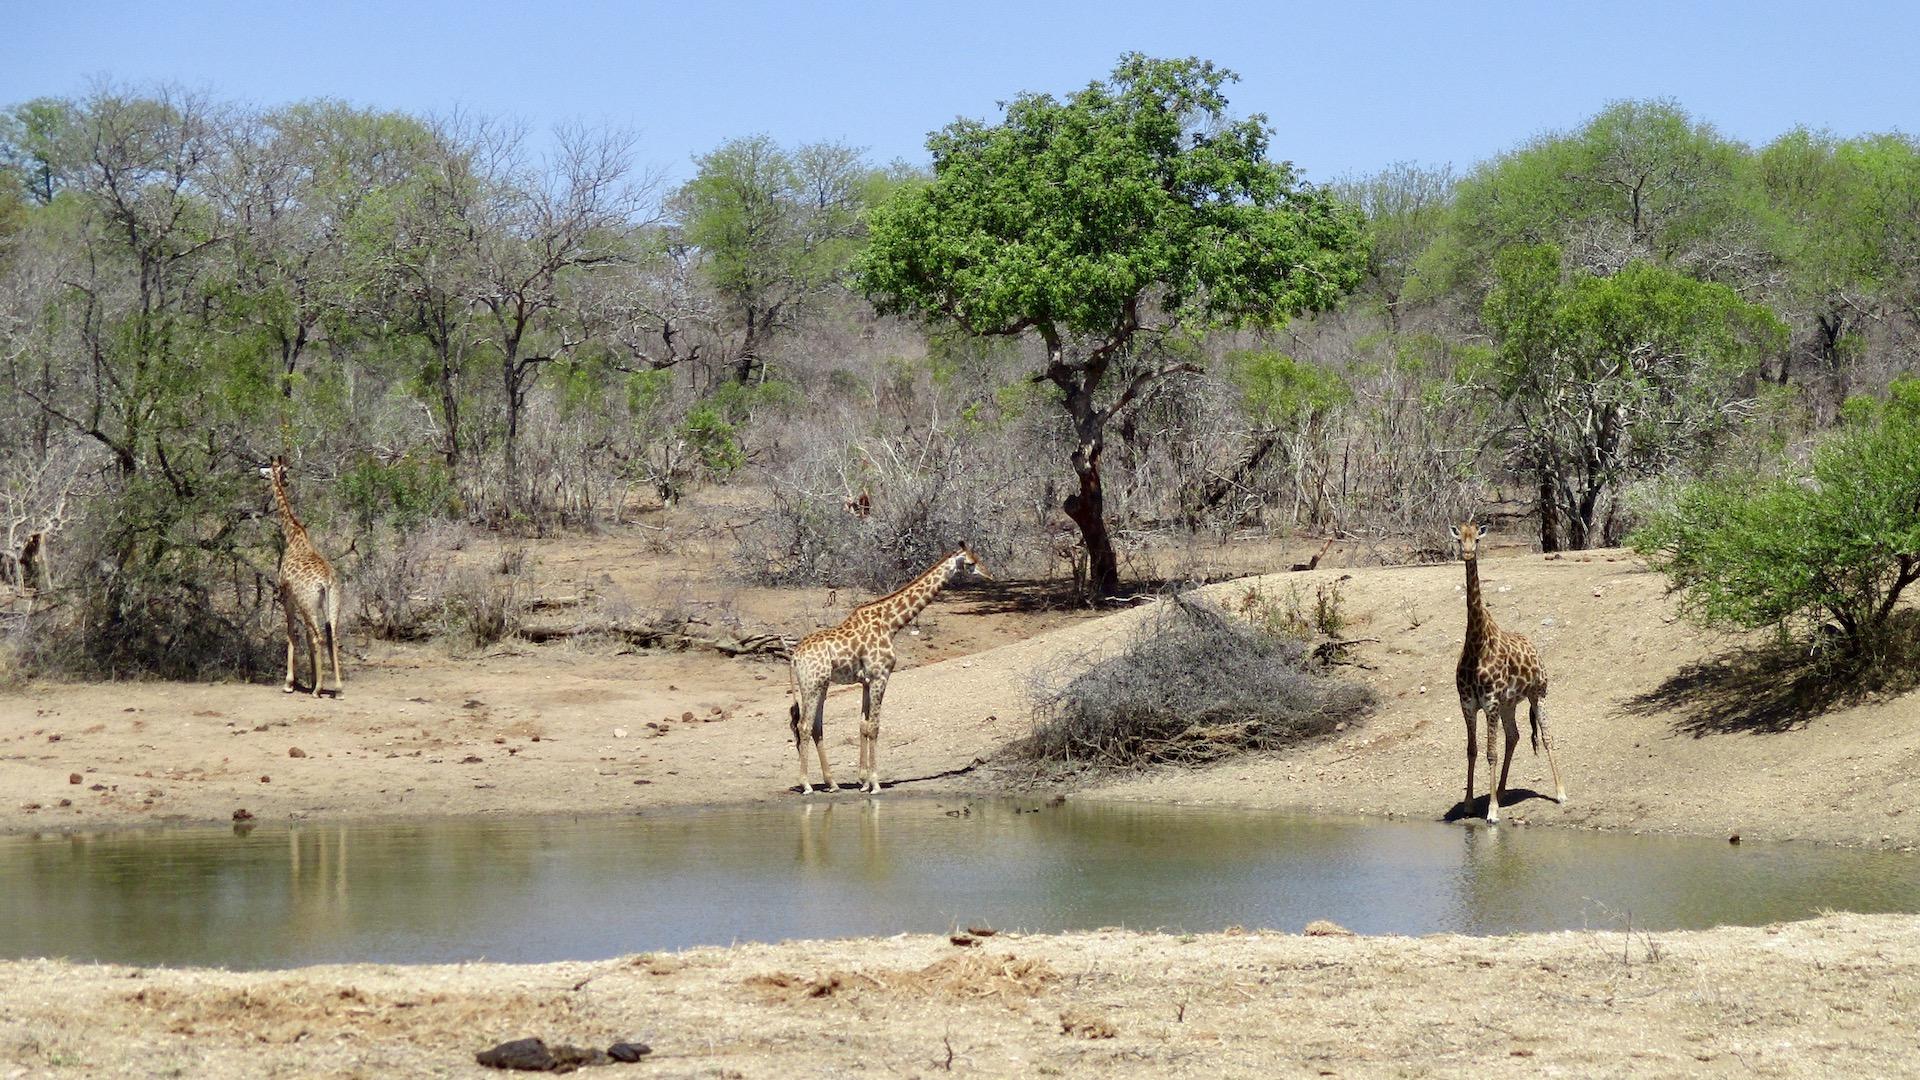 Giraffes - Thornybush Nature Reserve - Africa